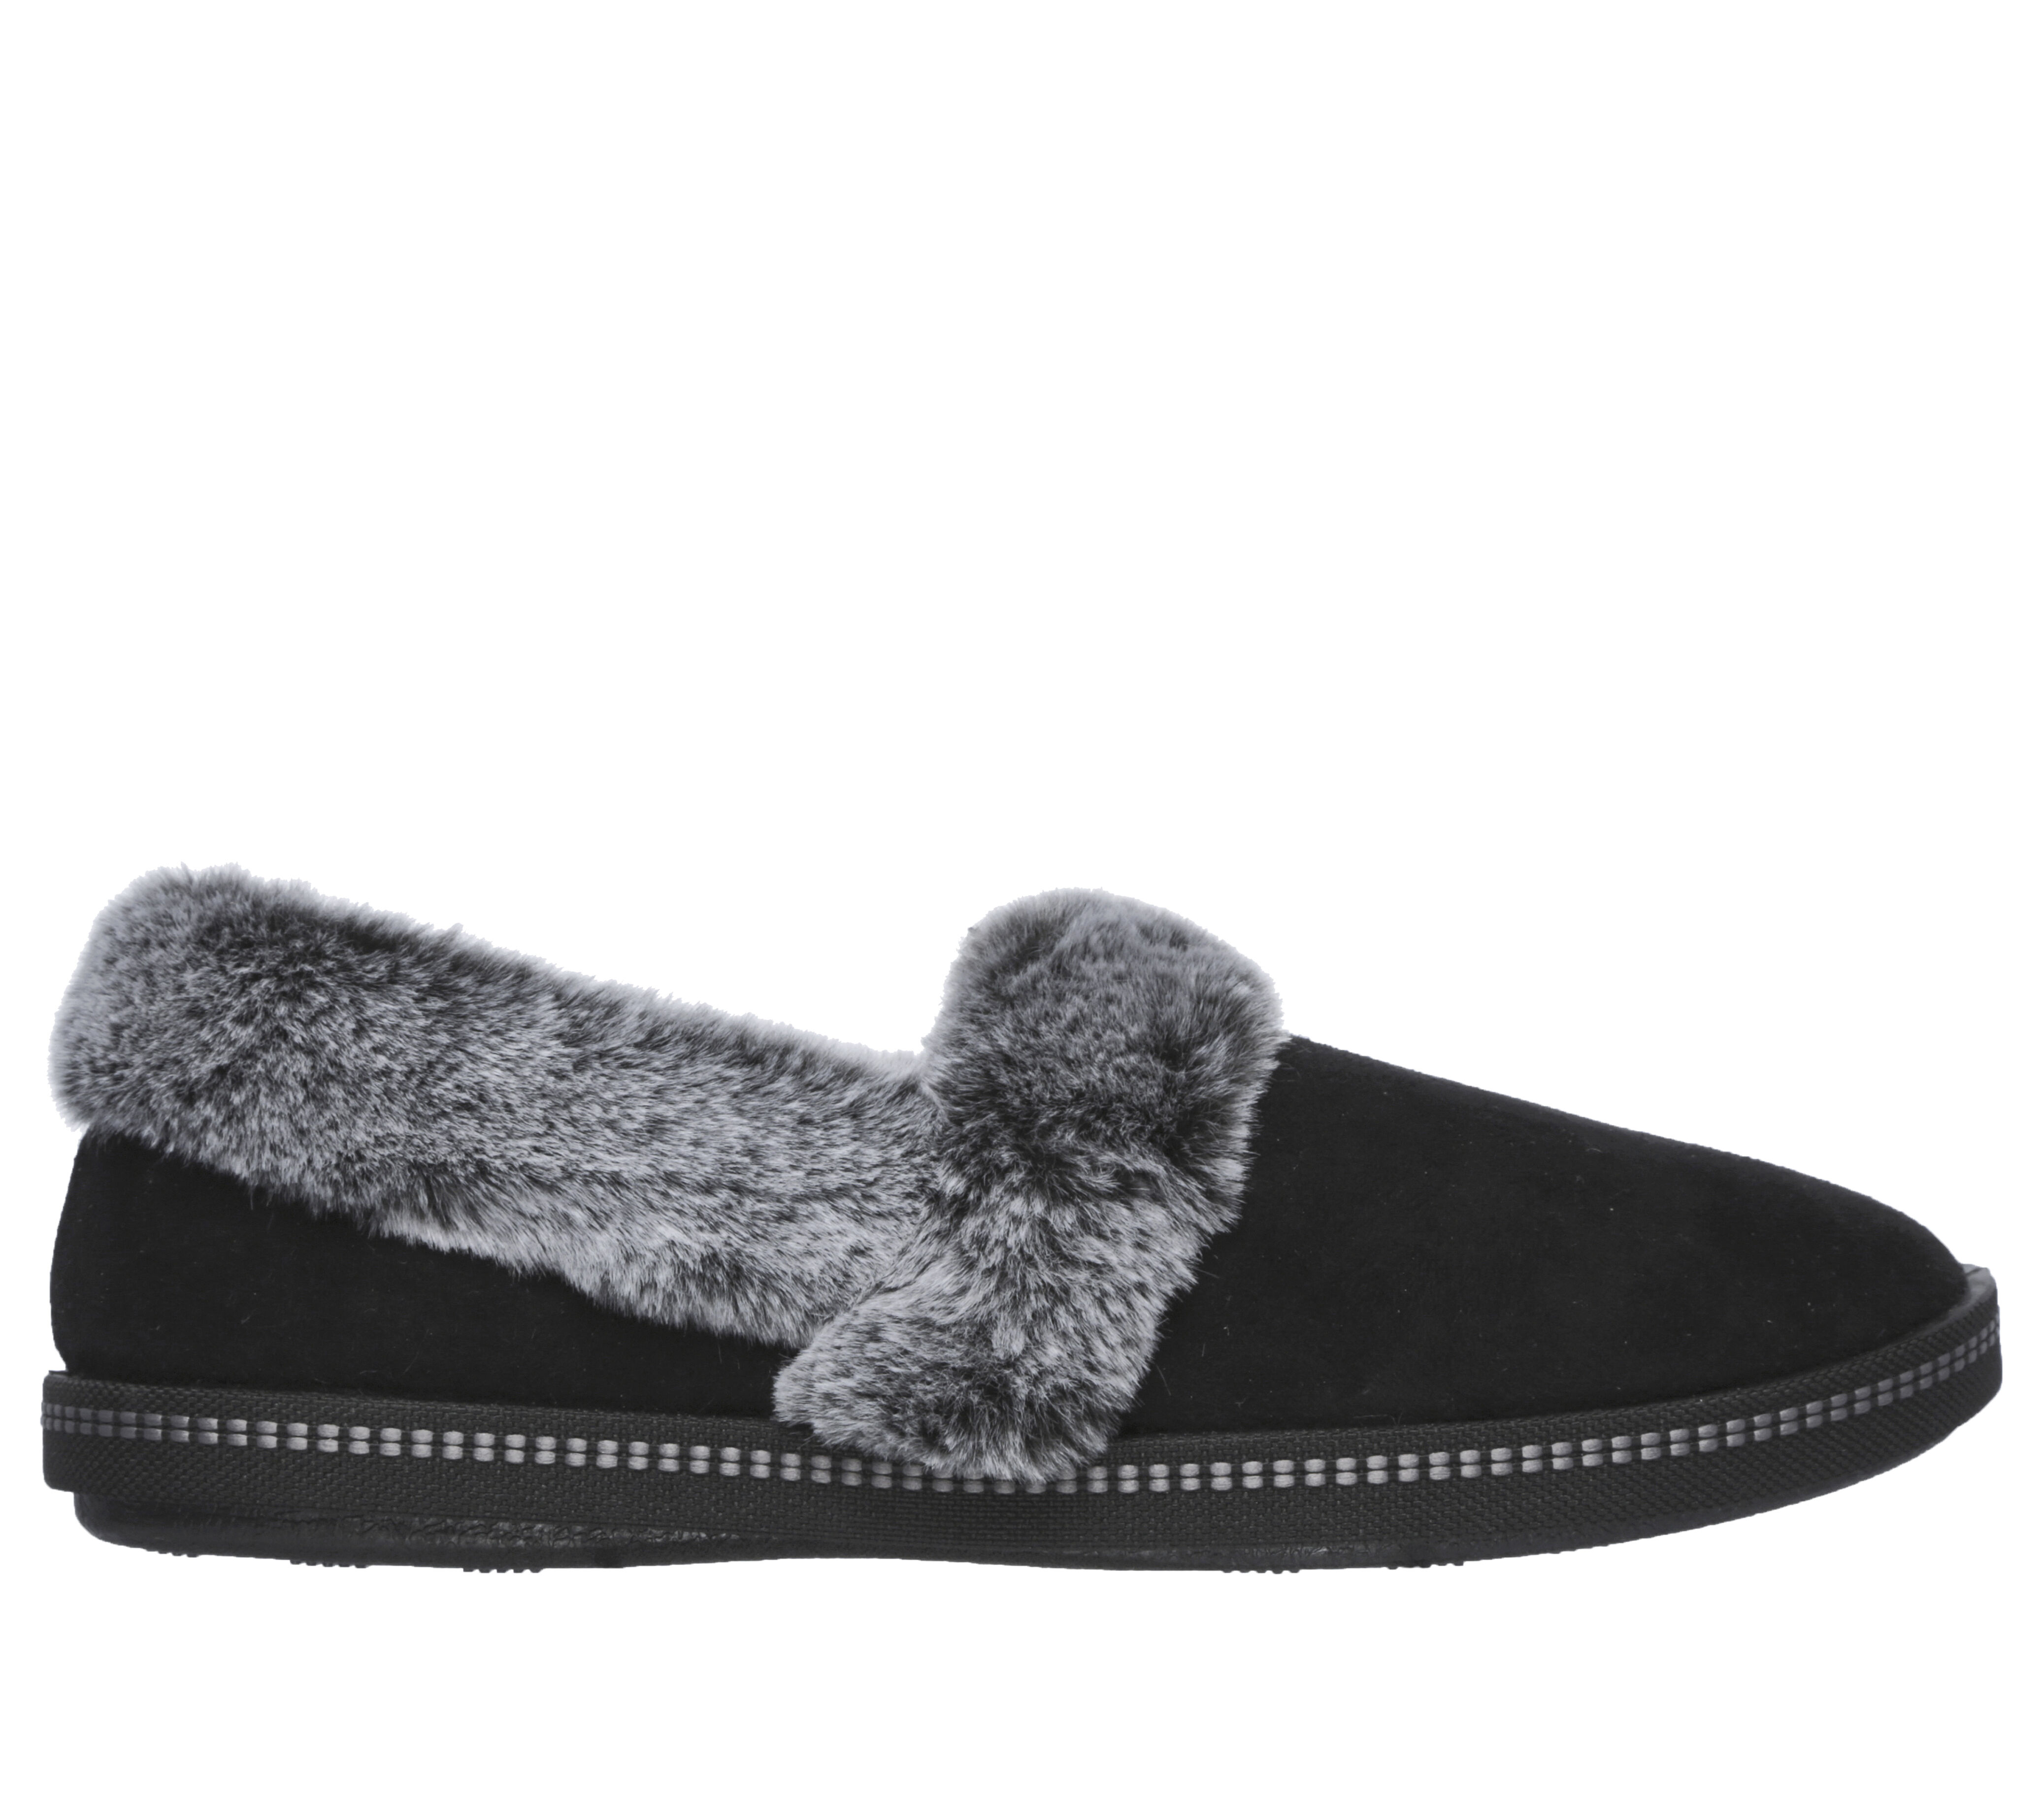 skechers slippers size 5